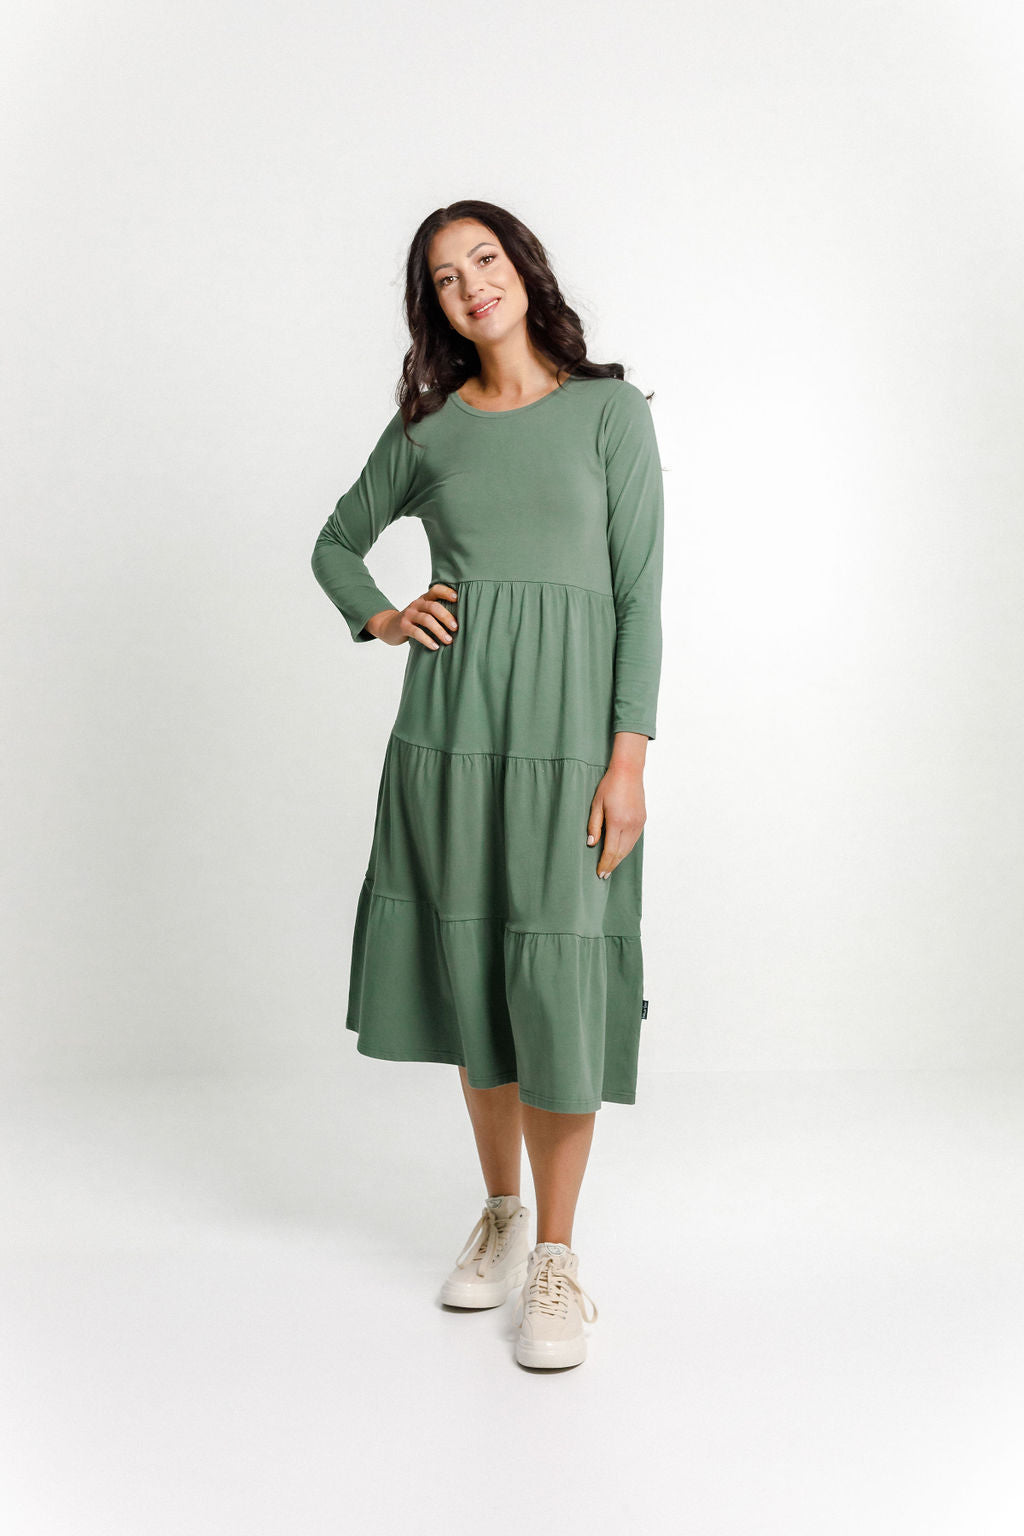 Long Sleeve Kendall Dress Moss - HOME LEE Dress NZ LUMA